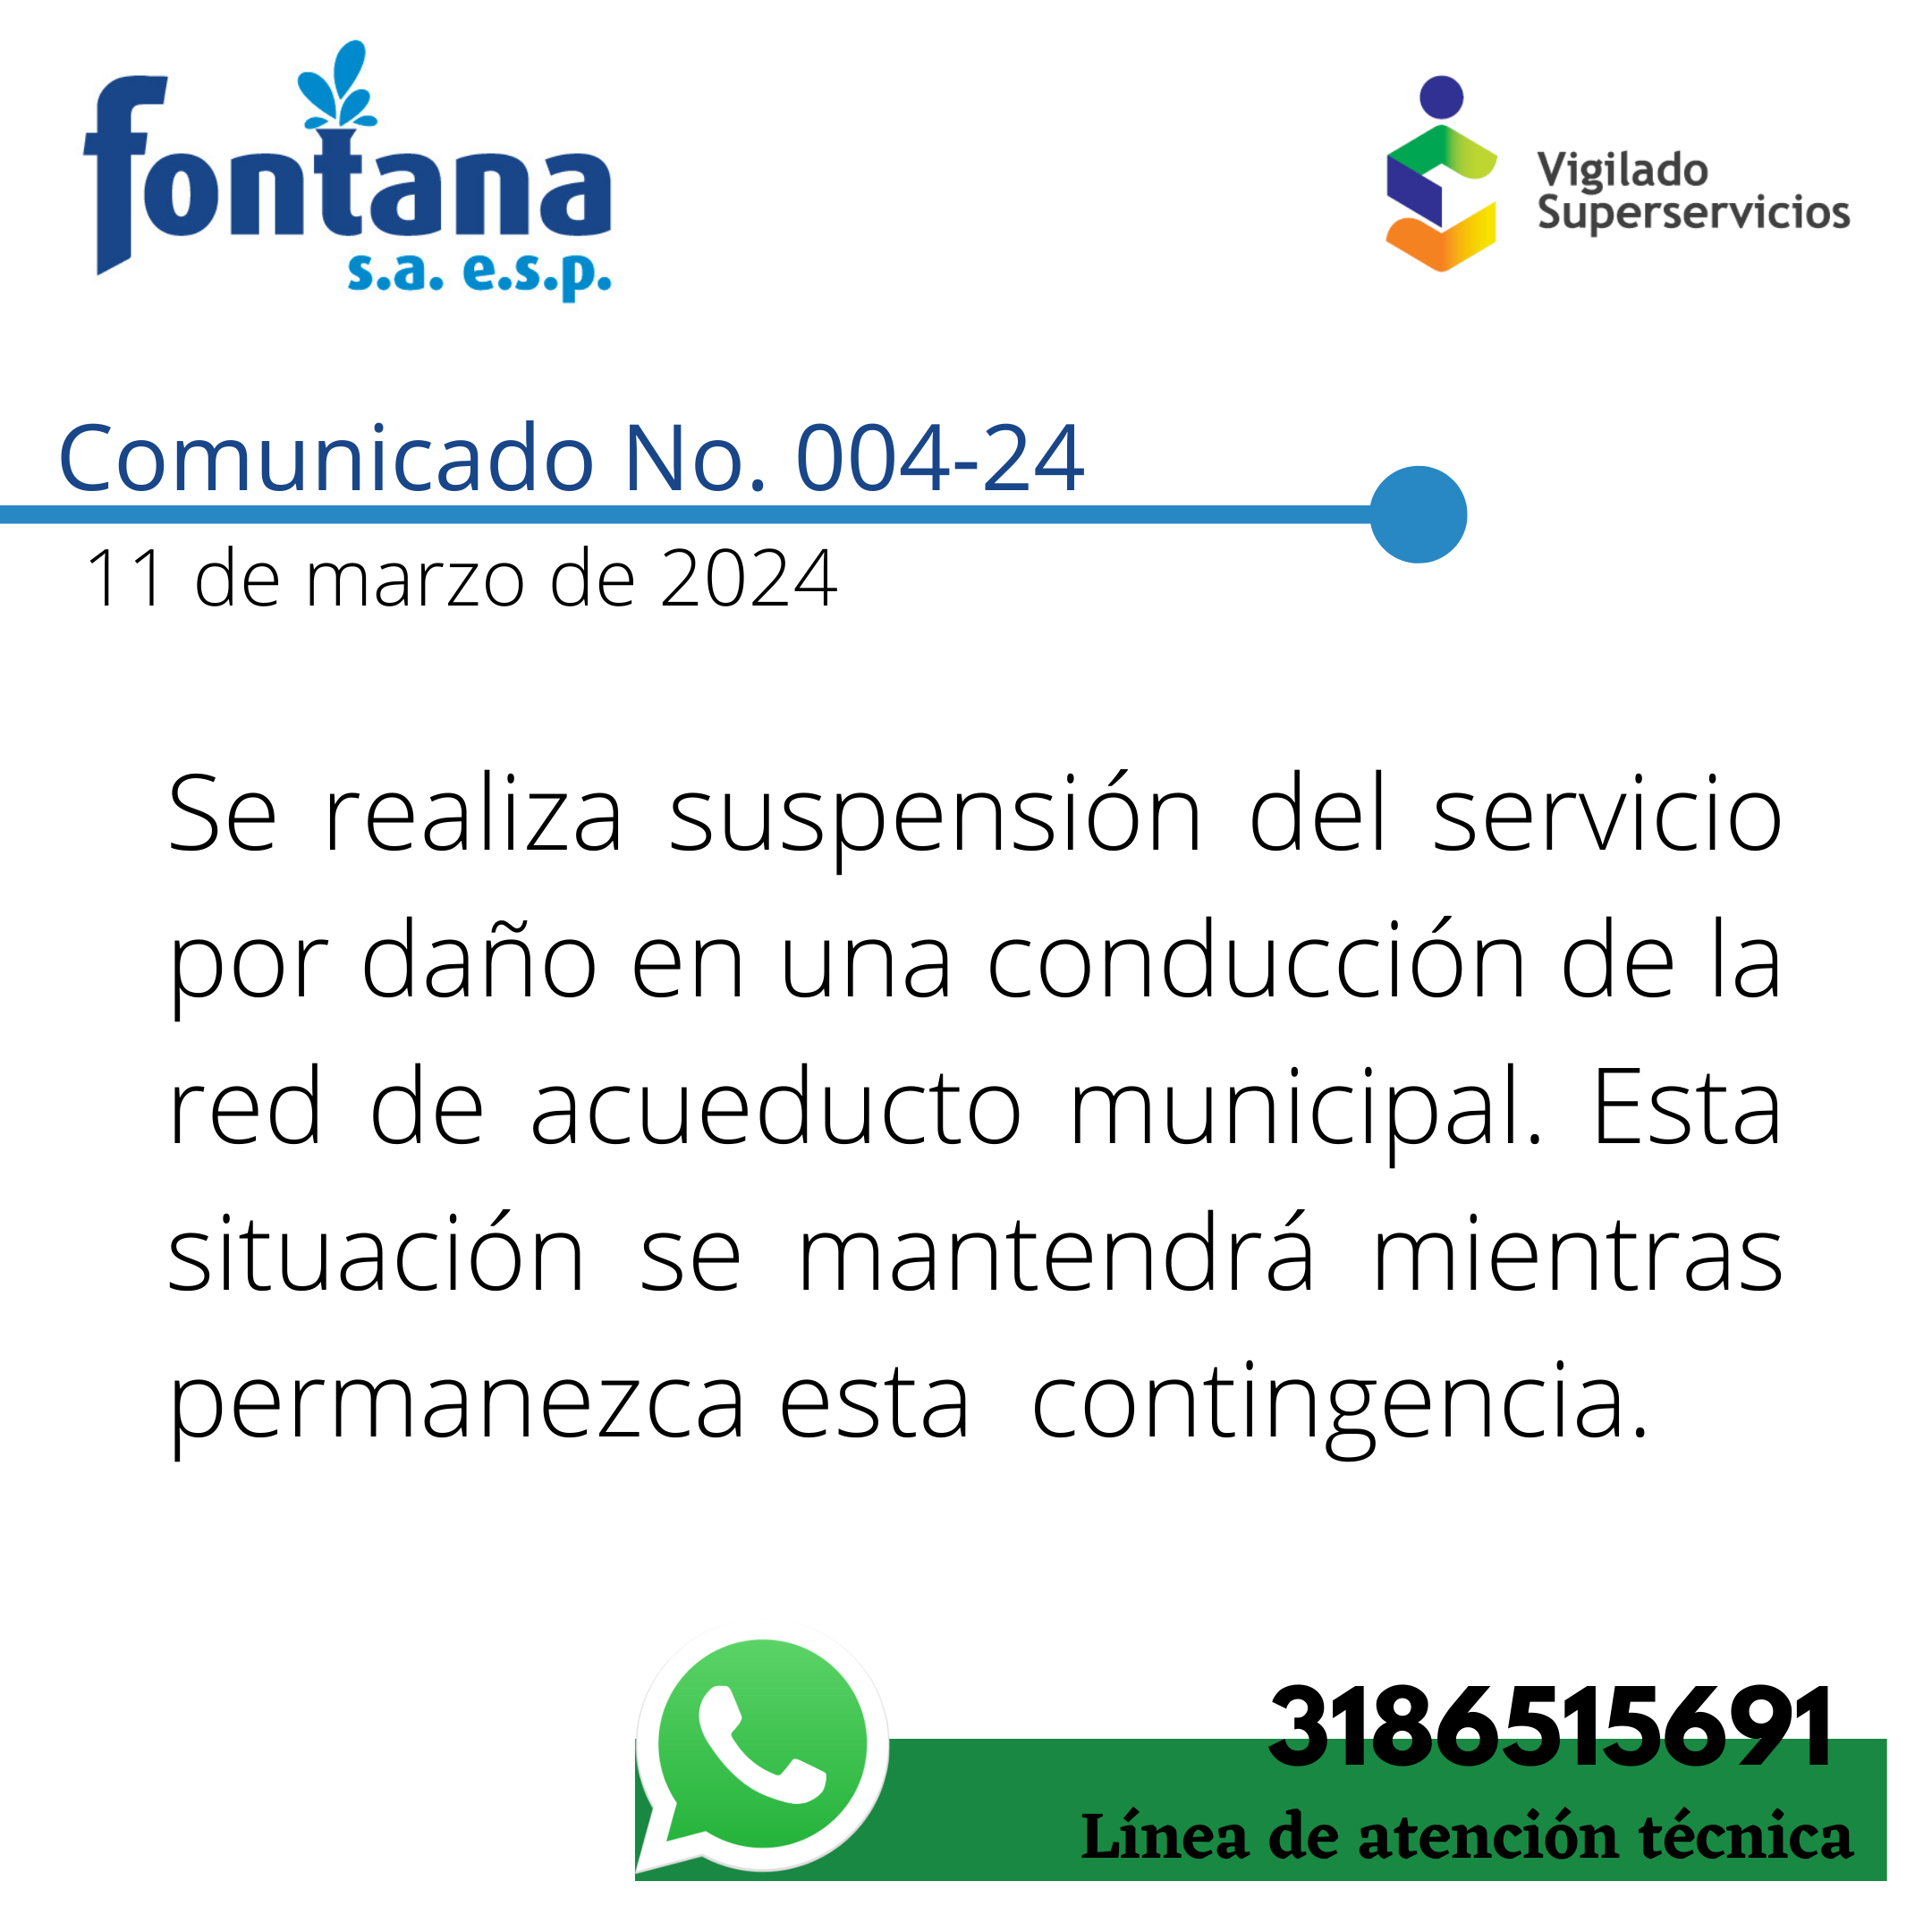 Comunicado No. 004-24 (Suspension)